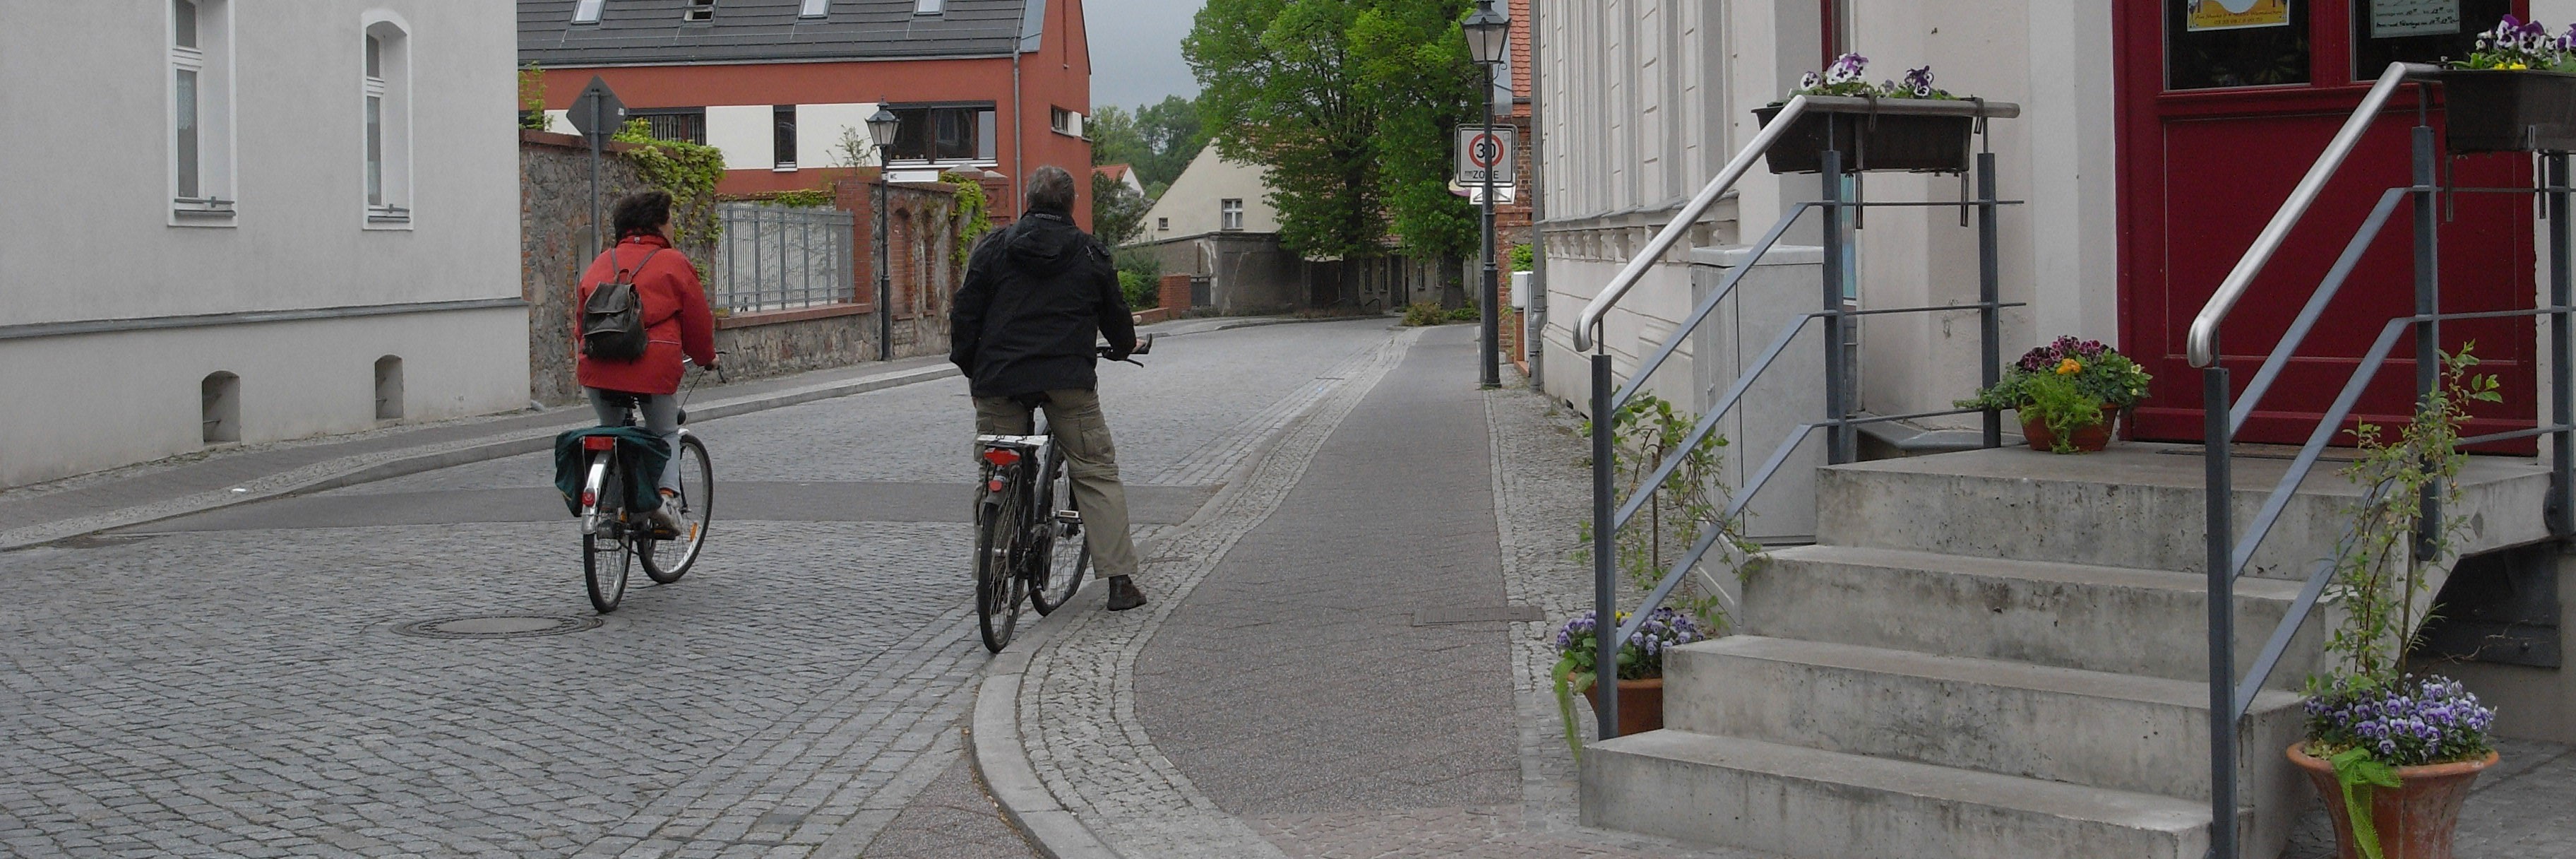 zwei Radfahrer fahren durch die Innenstadt von Werneuchen